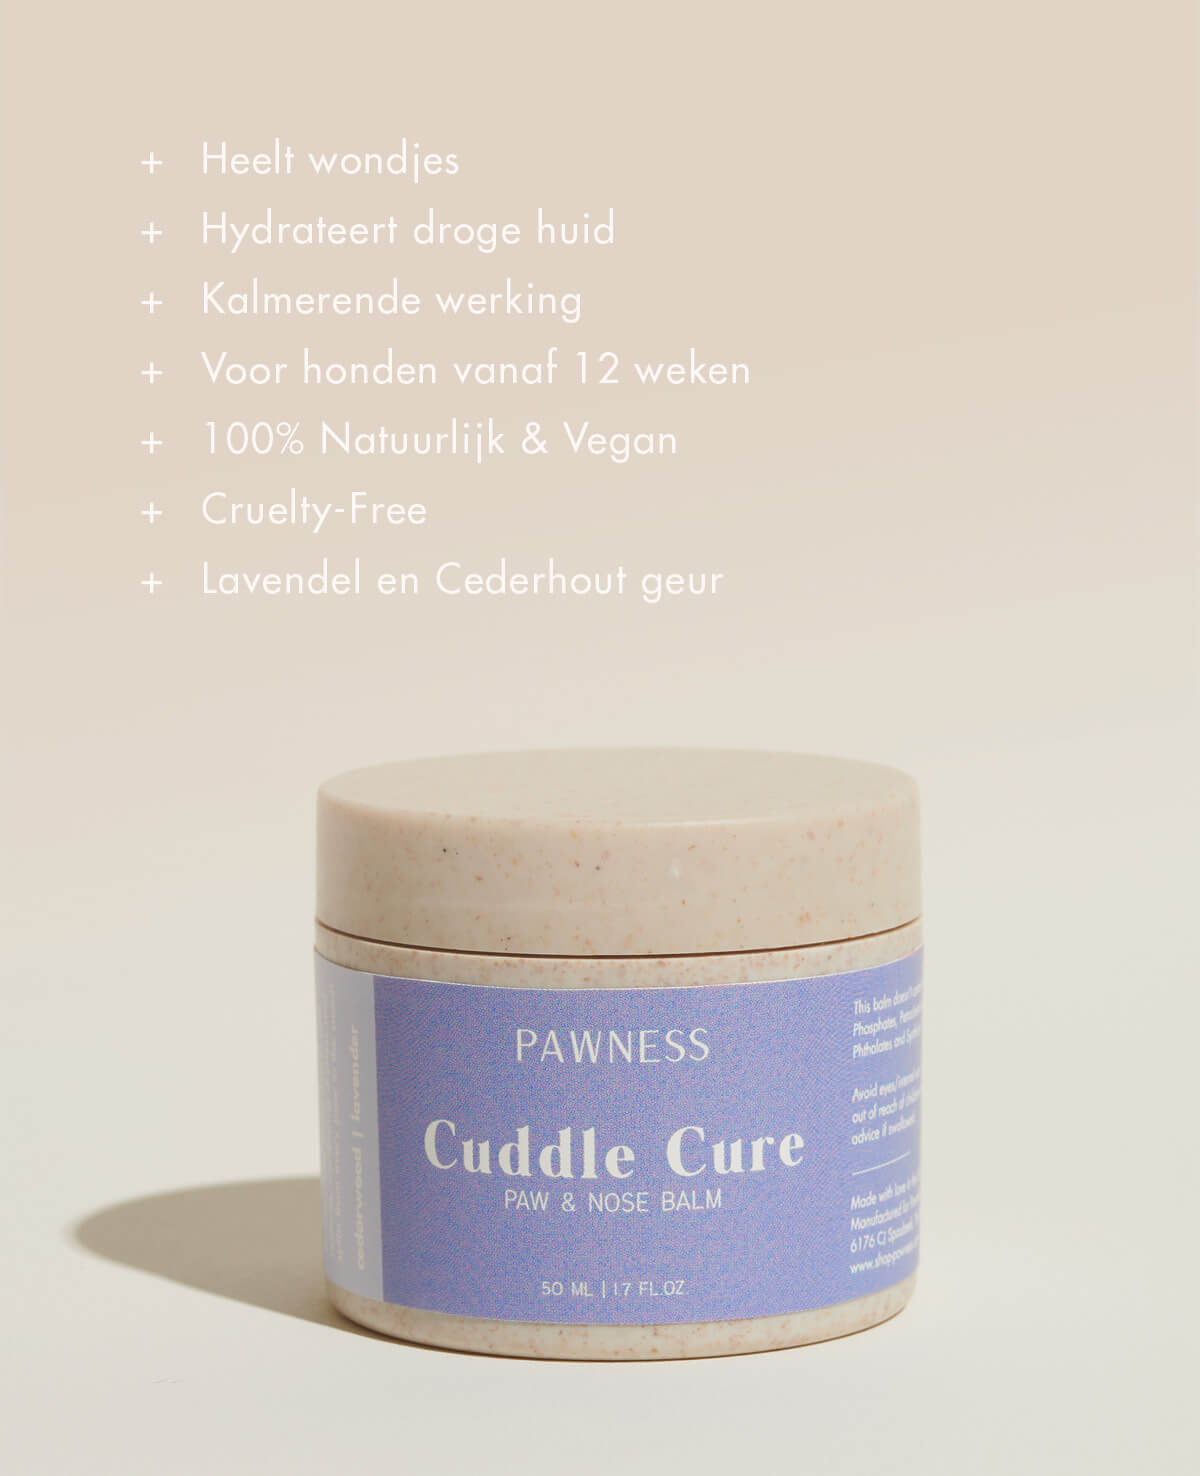 Cuddle Care Lichaamsscrub: Een verzachtende en zachte scrub voor een verwennende en ontspannende huidverzorgingsroutine.